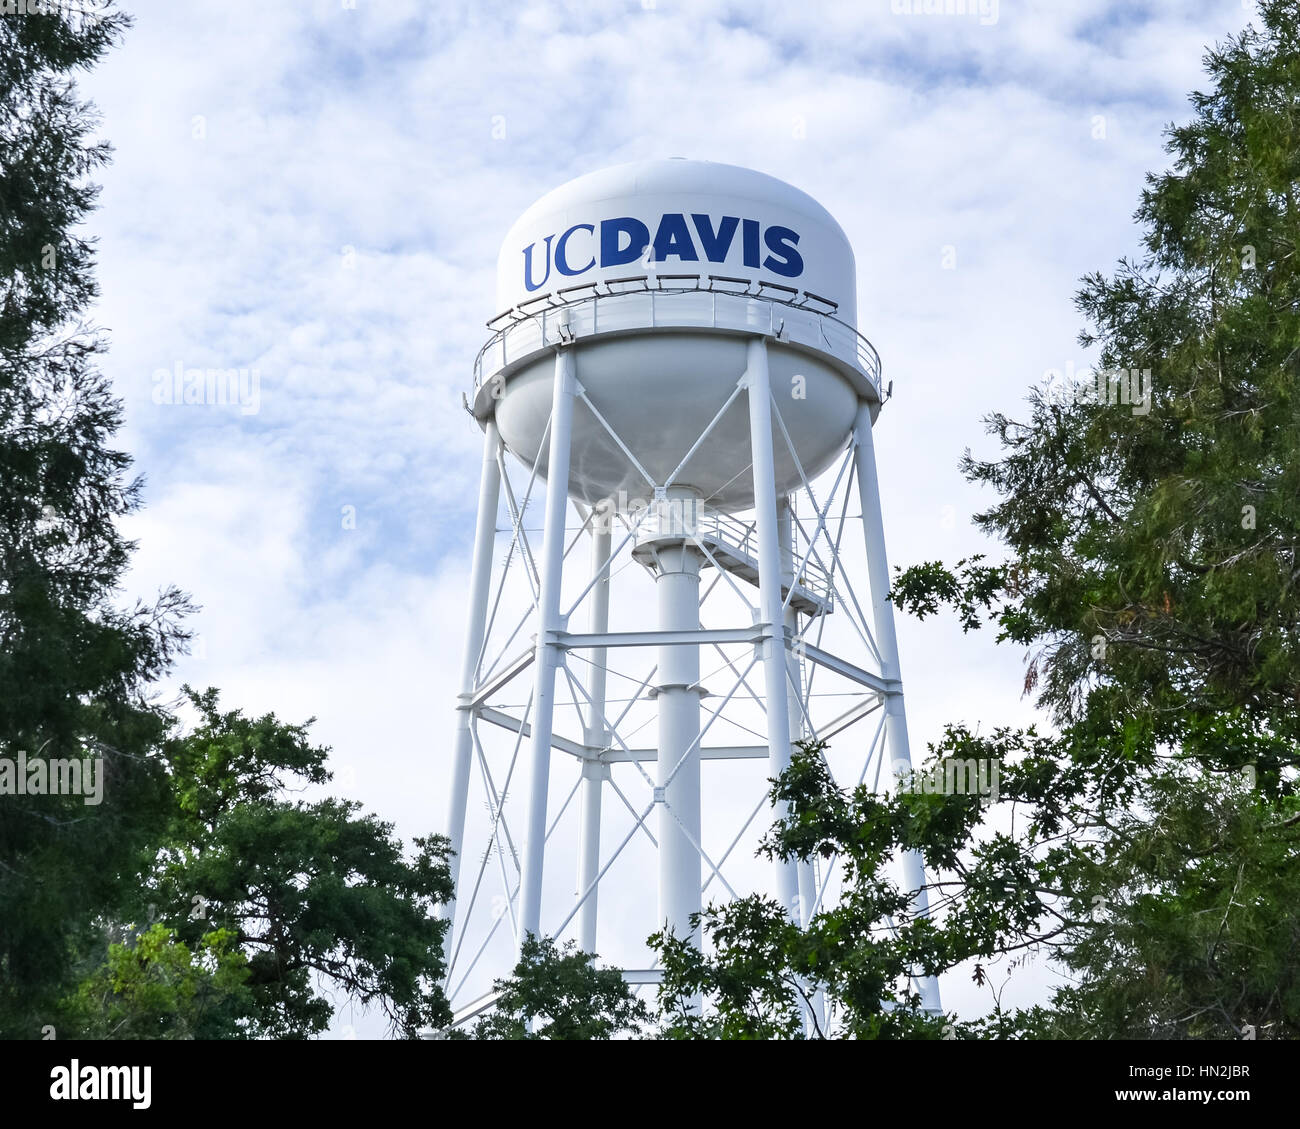 Davis, Californie, USA, 10 mai 2016. UC Davis' Water Tower est un établissement emblématique de la UC Davis et de la ville de Davis. Banque D'Images